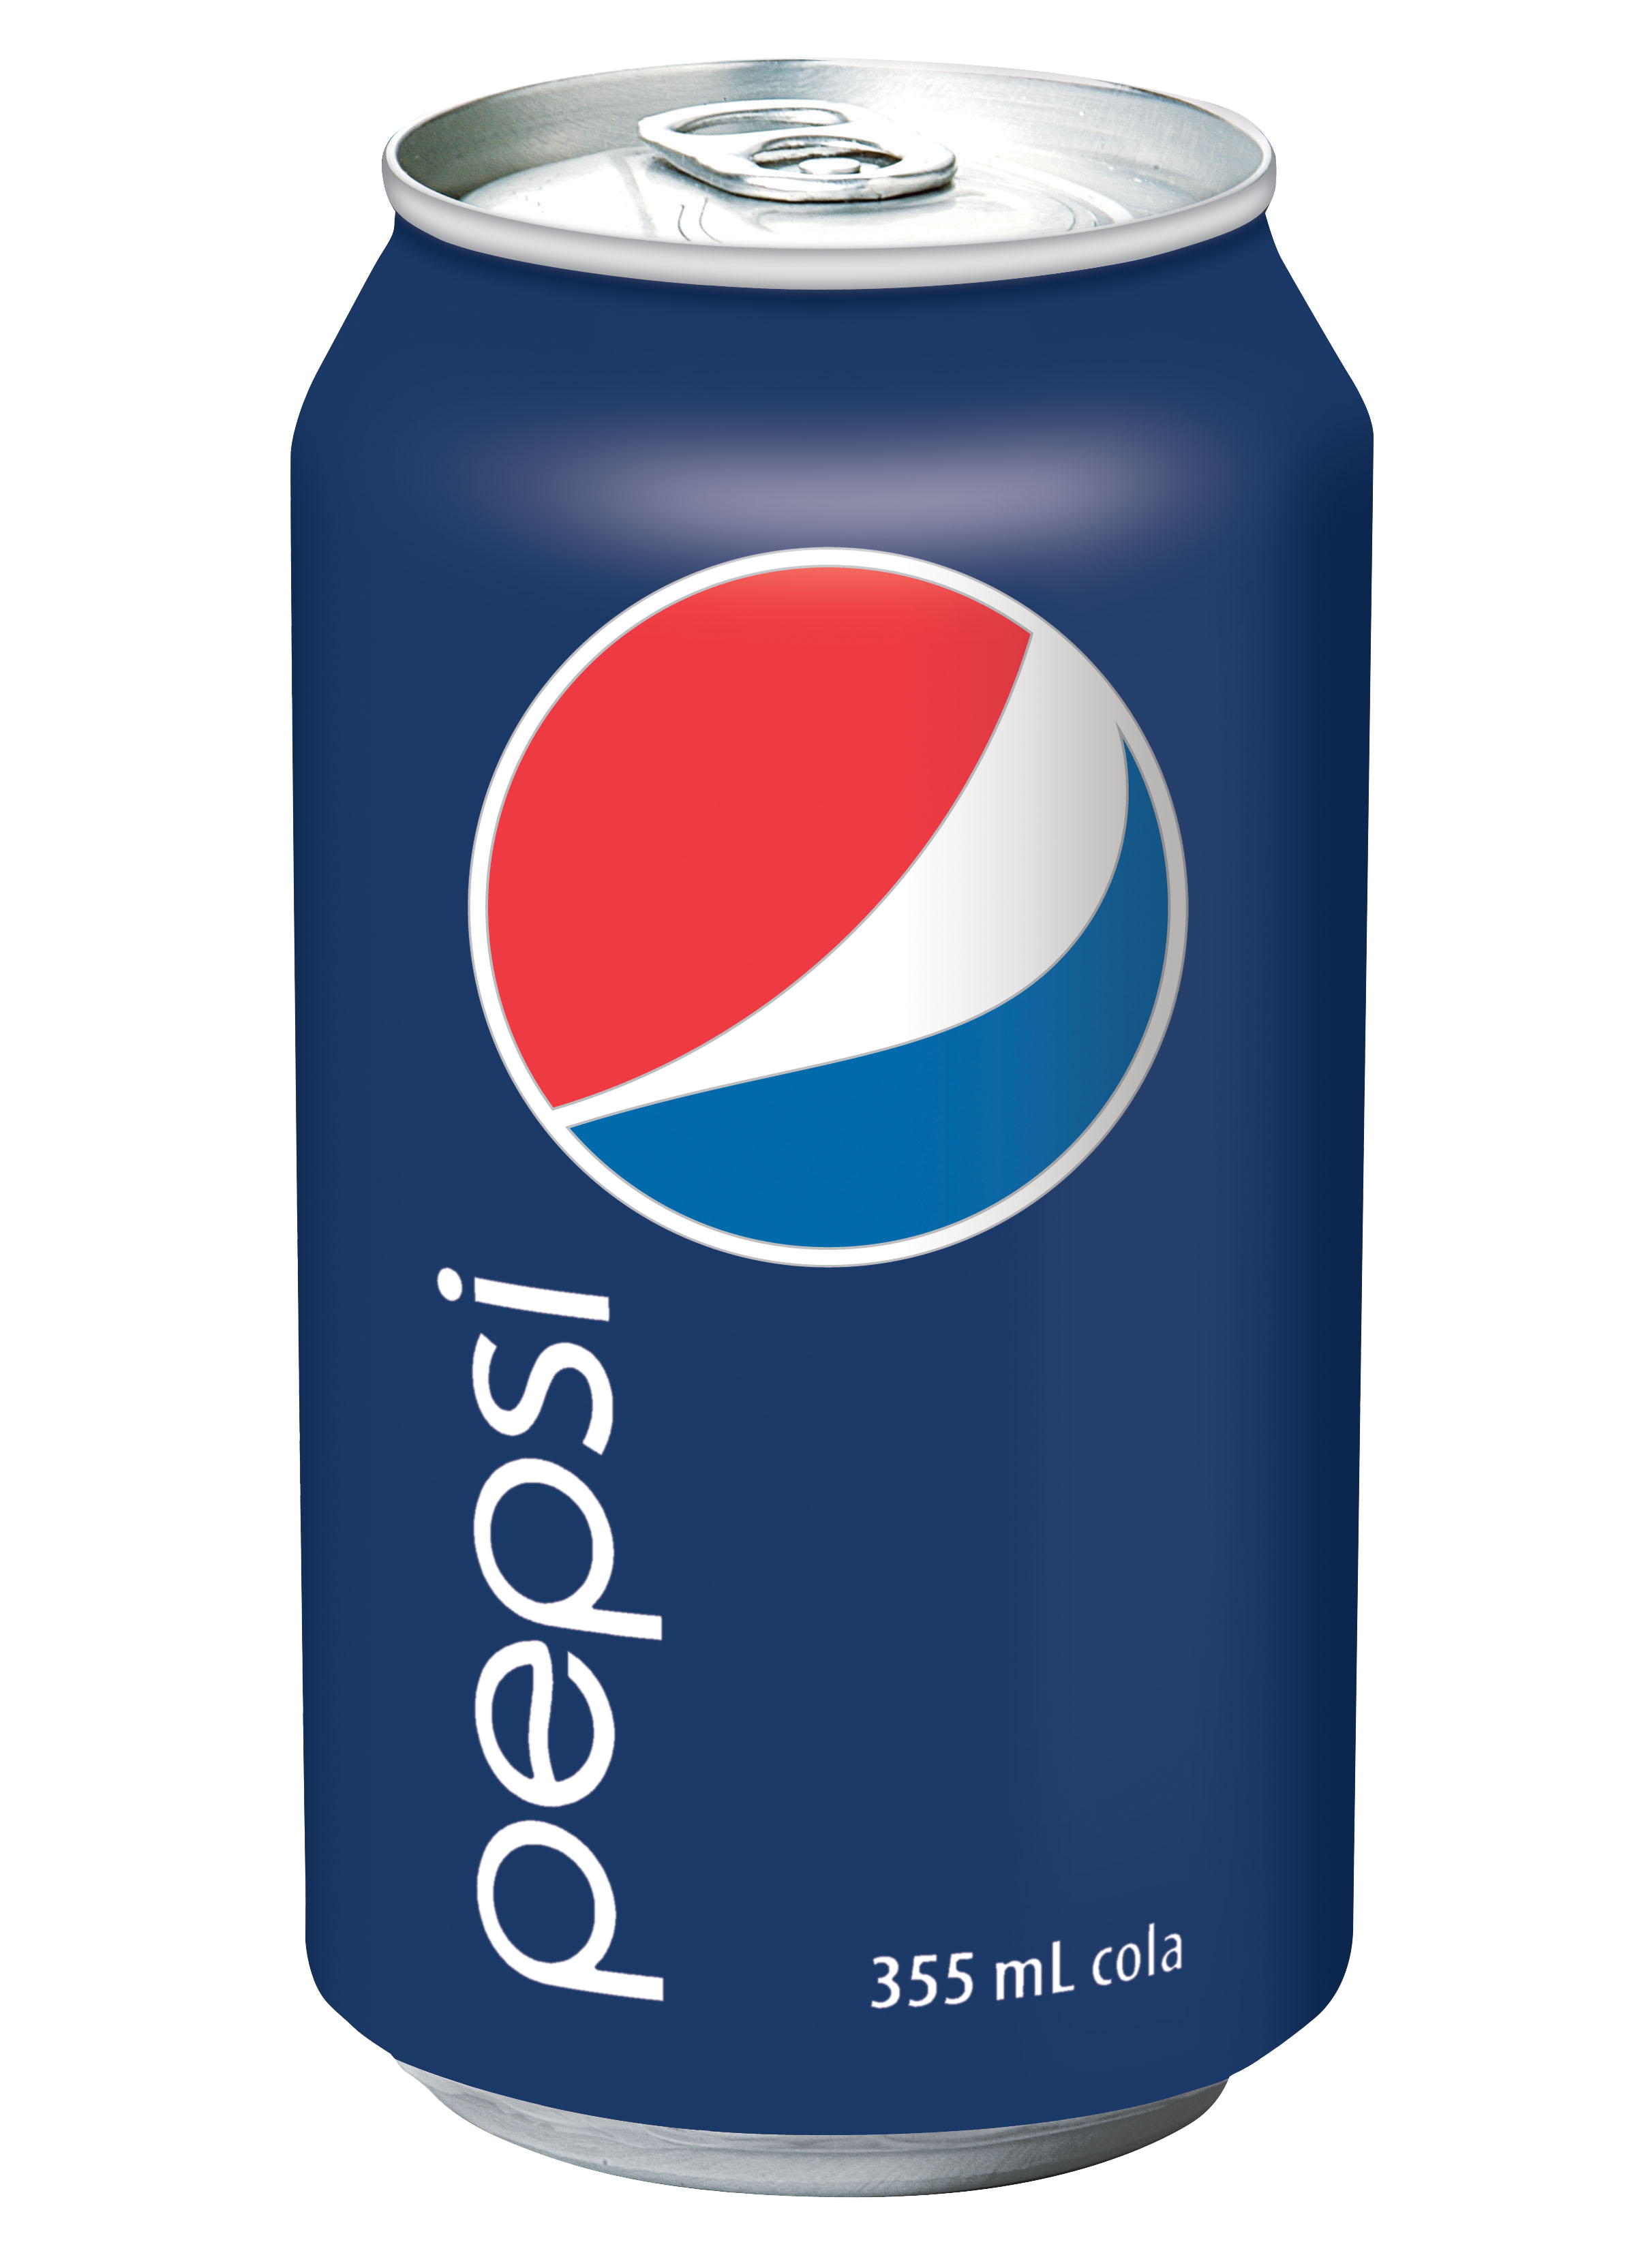 Pepsi en bouteille